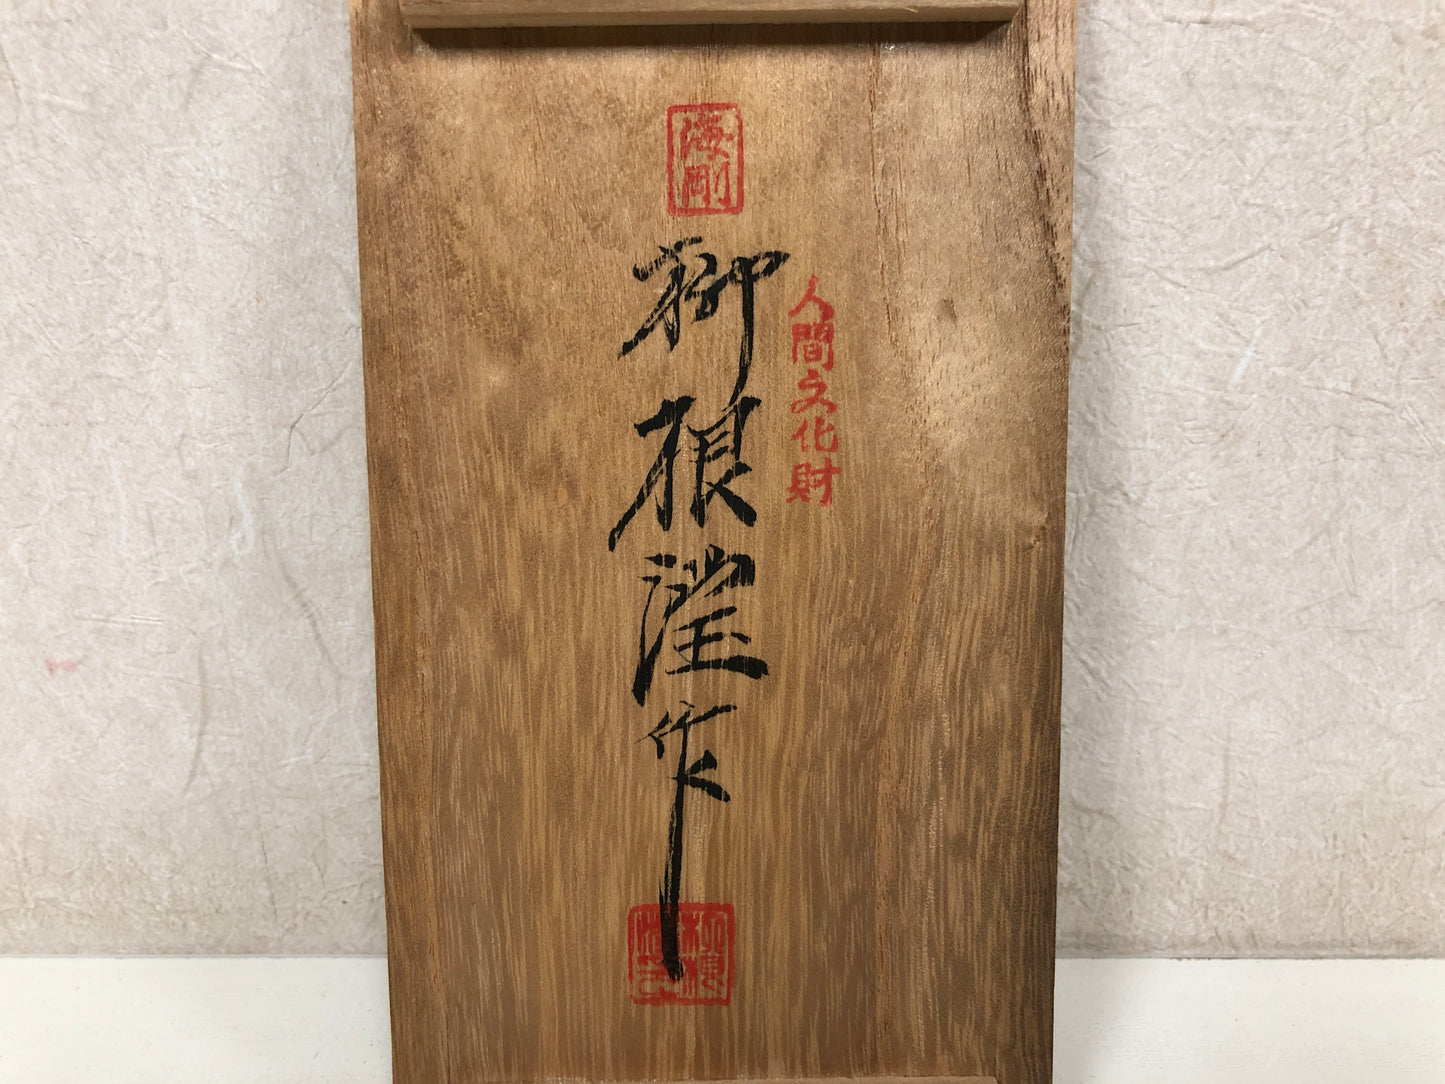 Y4035 YUNOMI Goryeo Celadon pair signed box Yu Hegan Korea antique tea ceremony